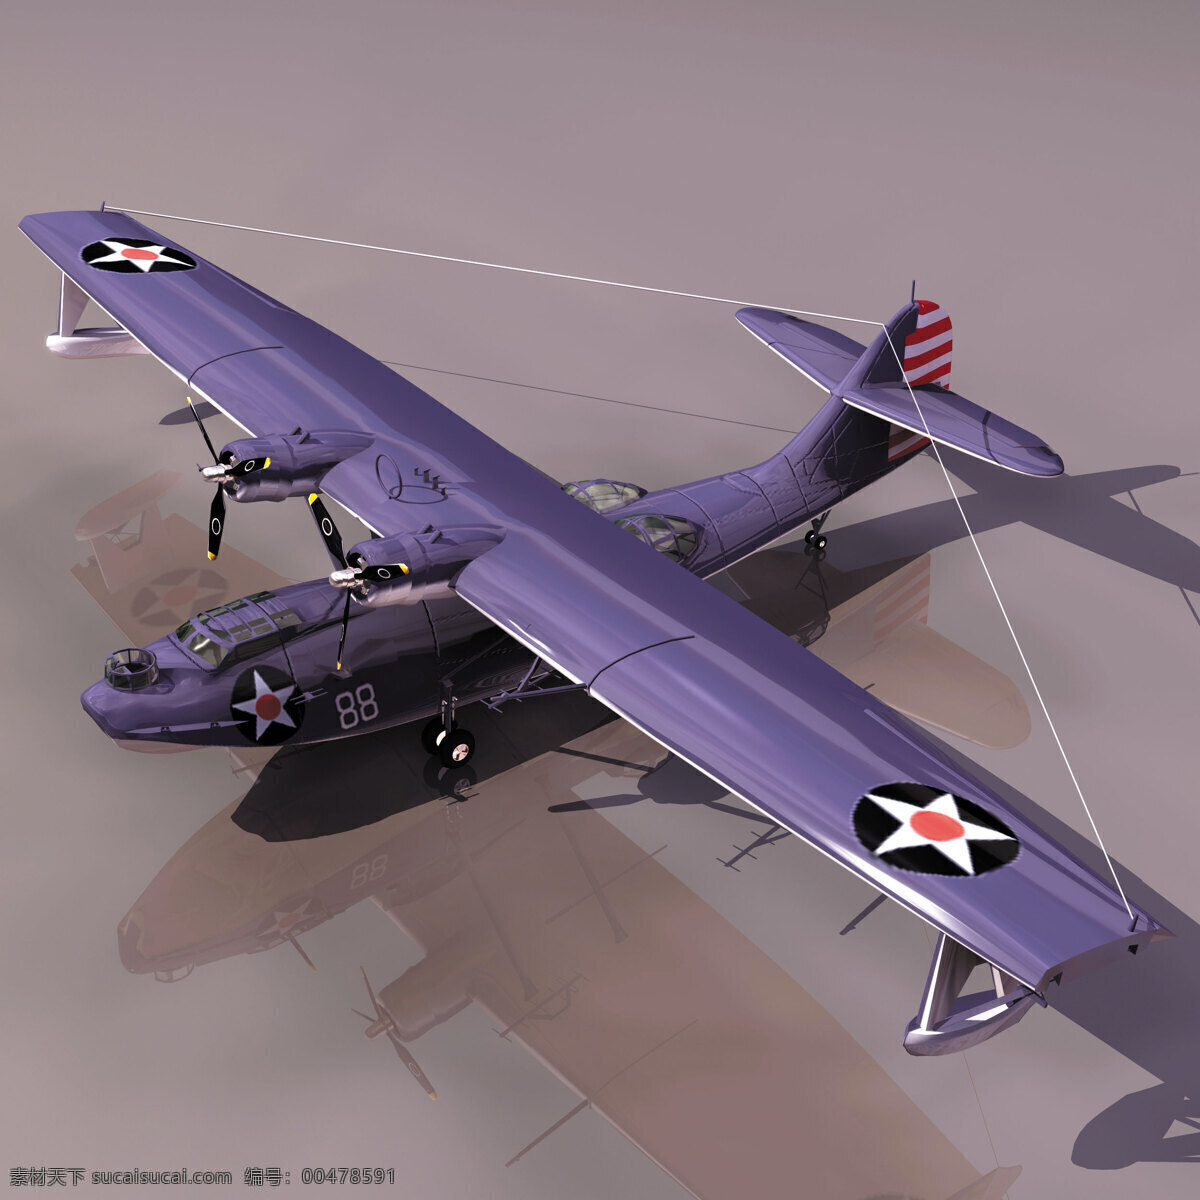 飞机模型08 catalina 飞机模型 军事模型 空军武器库 3d模型素材 其他3d模型